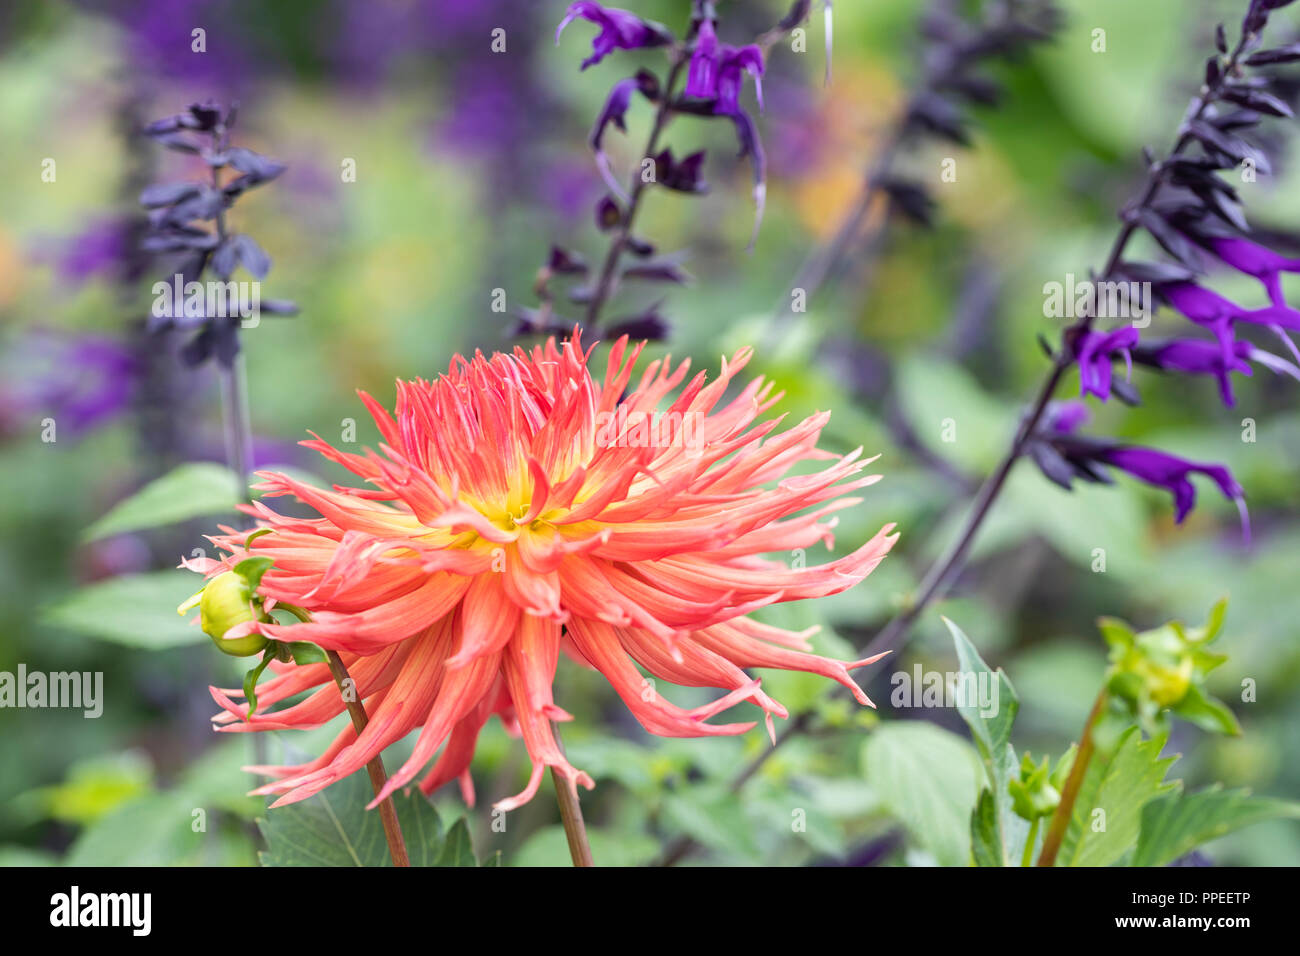 Close up of a cactus dahlia flowering in an English garden border Stock Photo